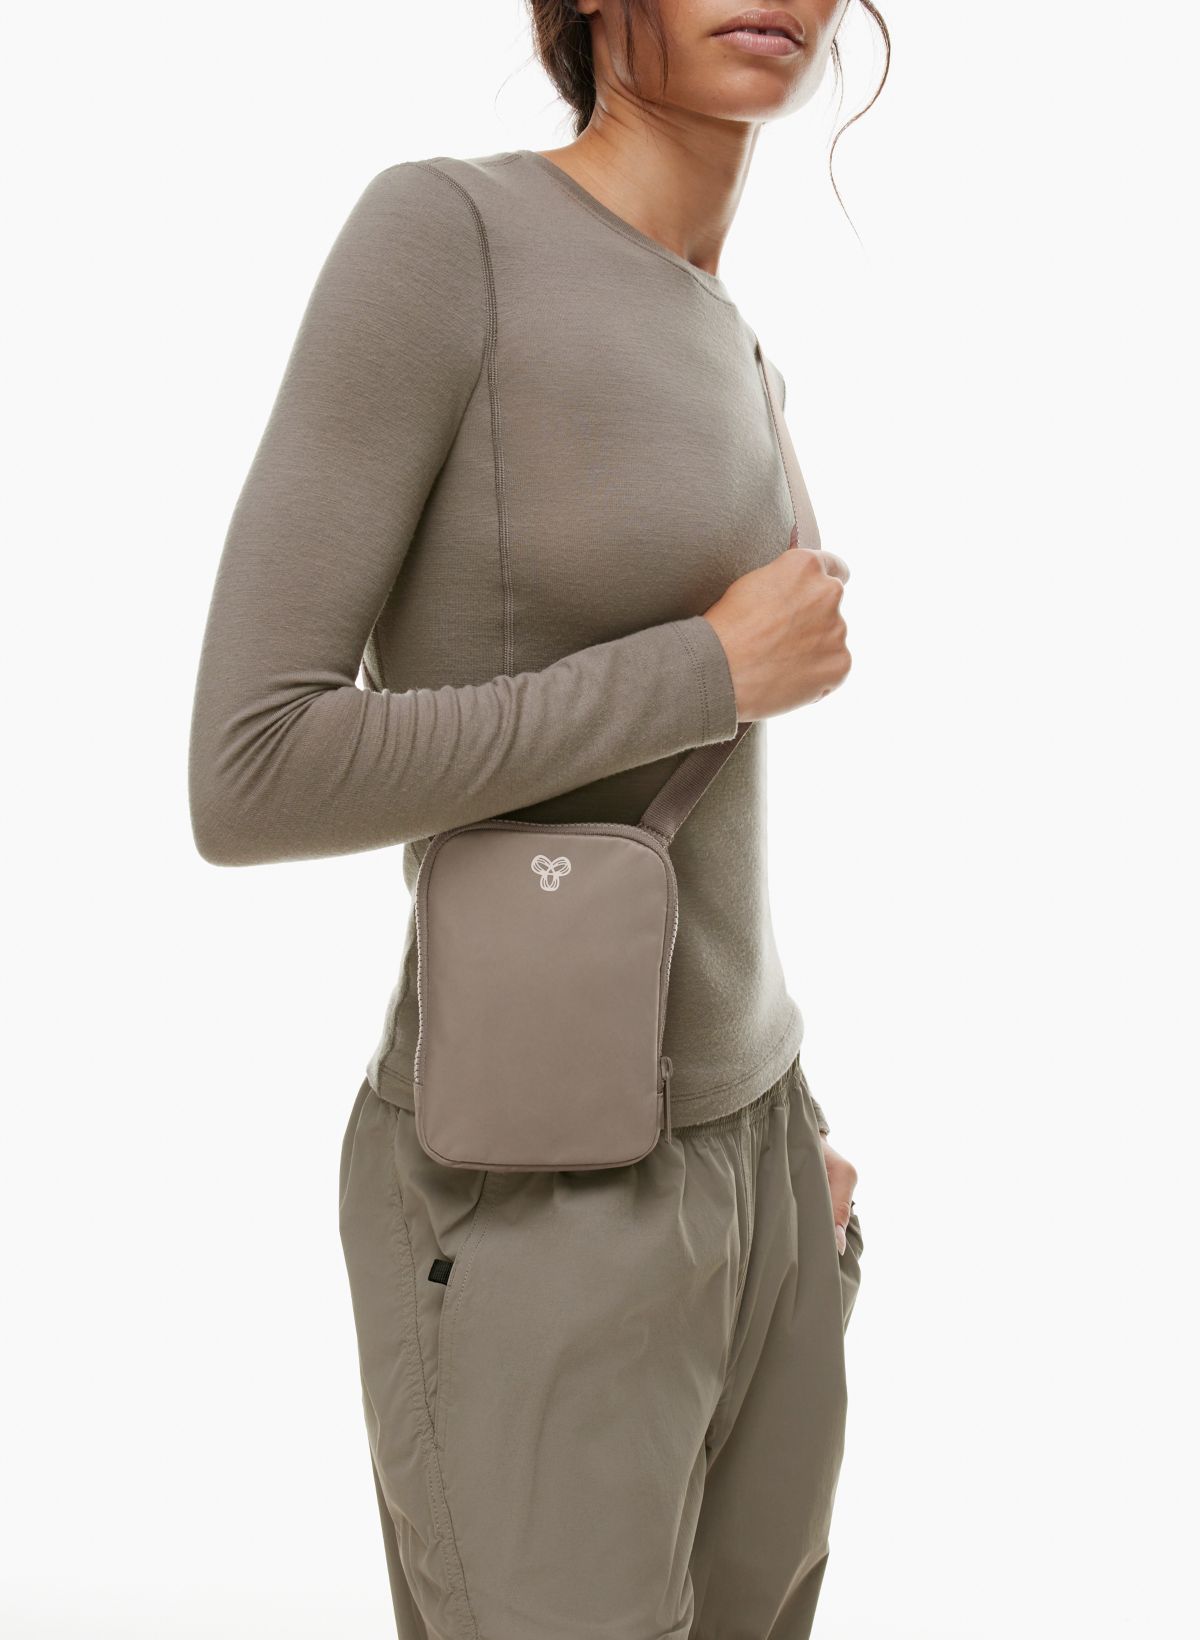 Trend alert: Carcasas colgantes y bolsos para el celular, Effortless Chic